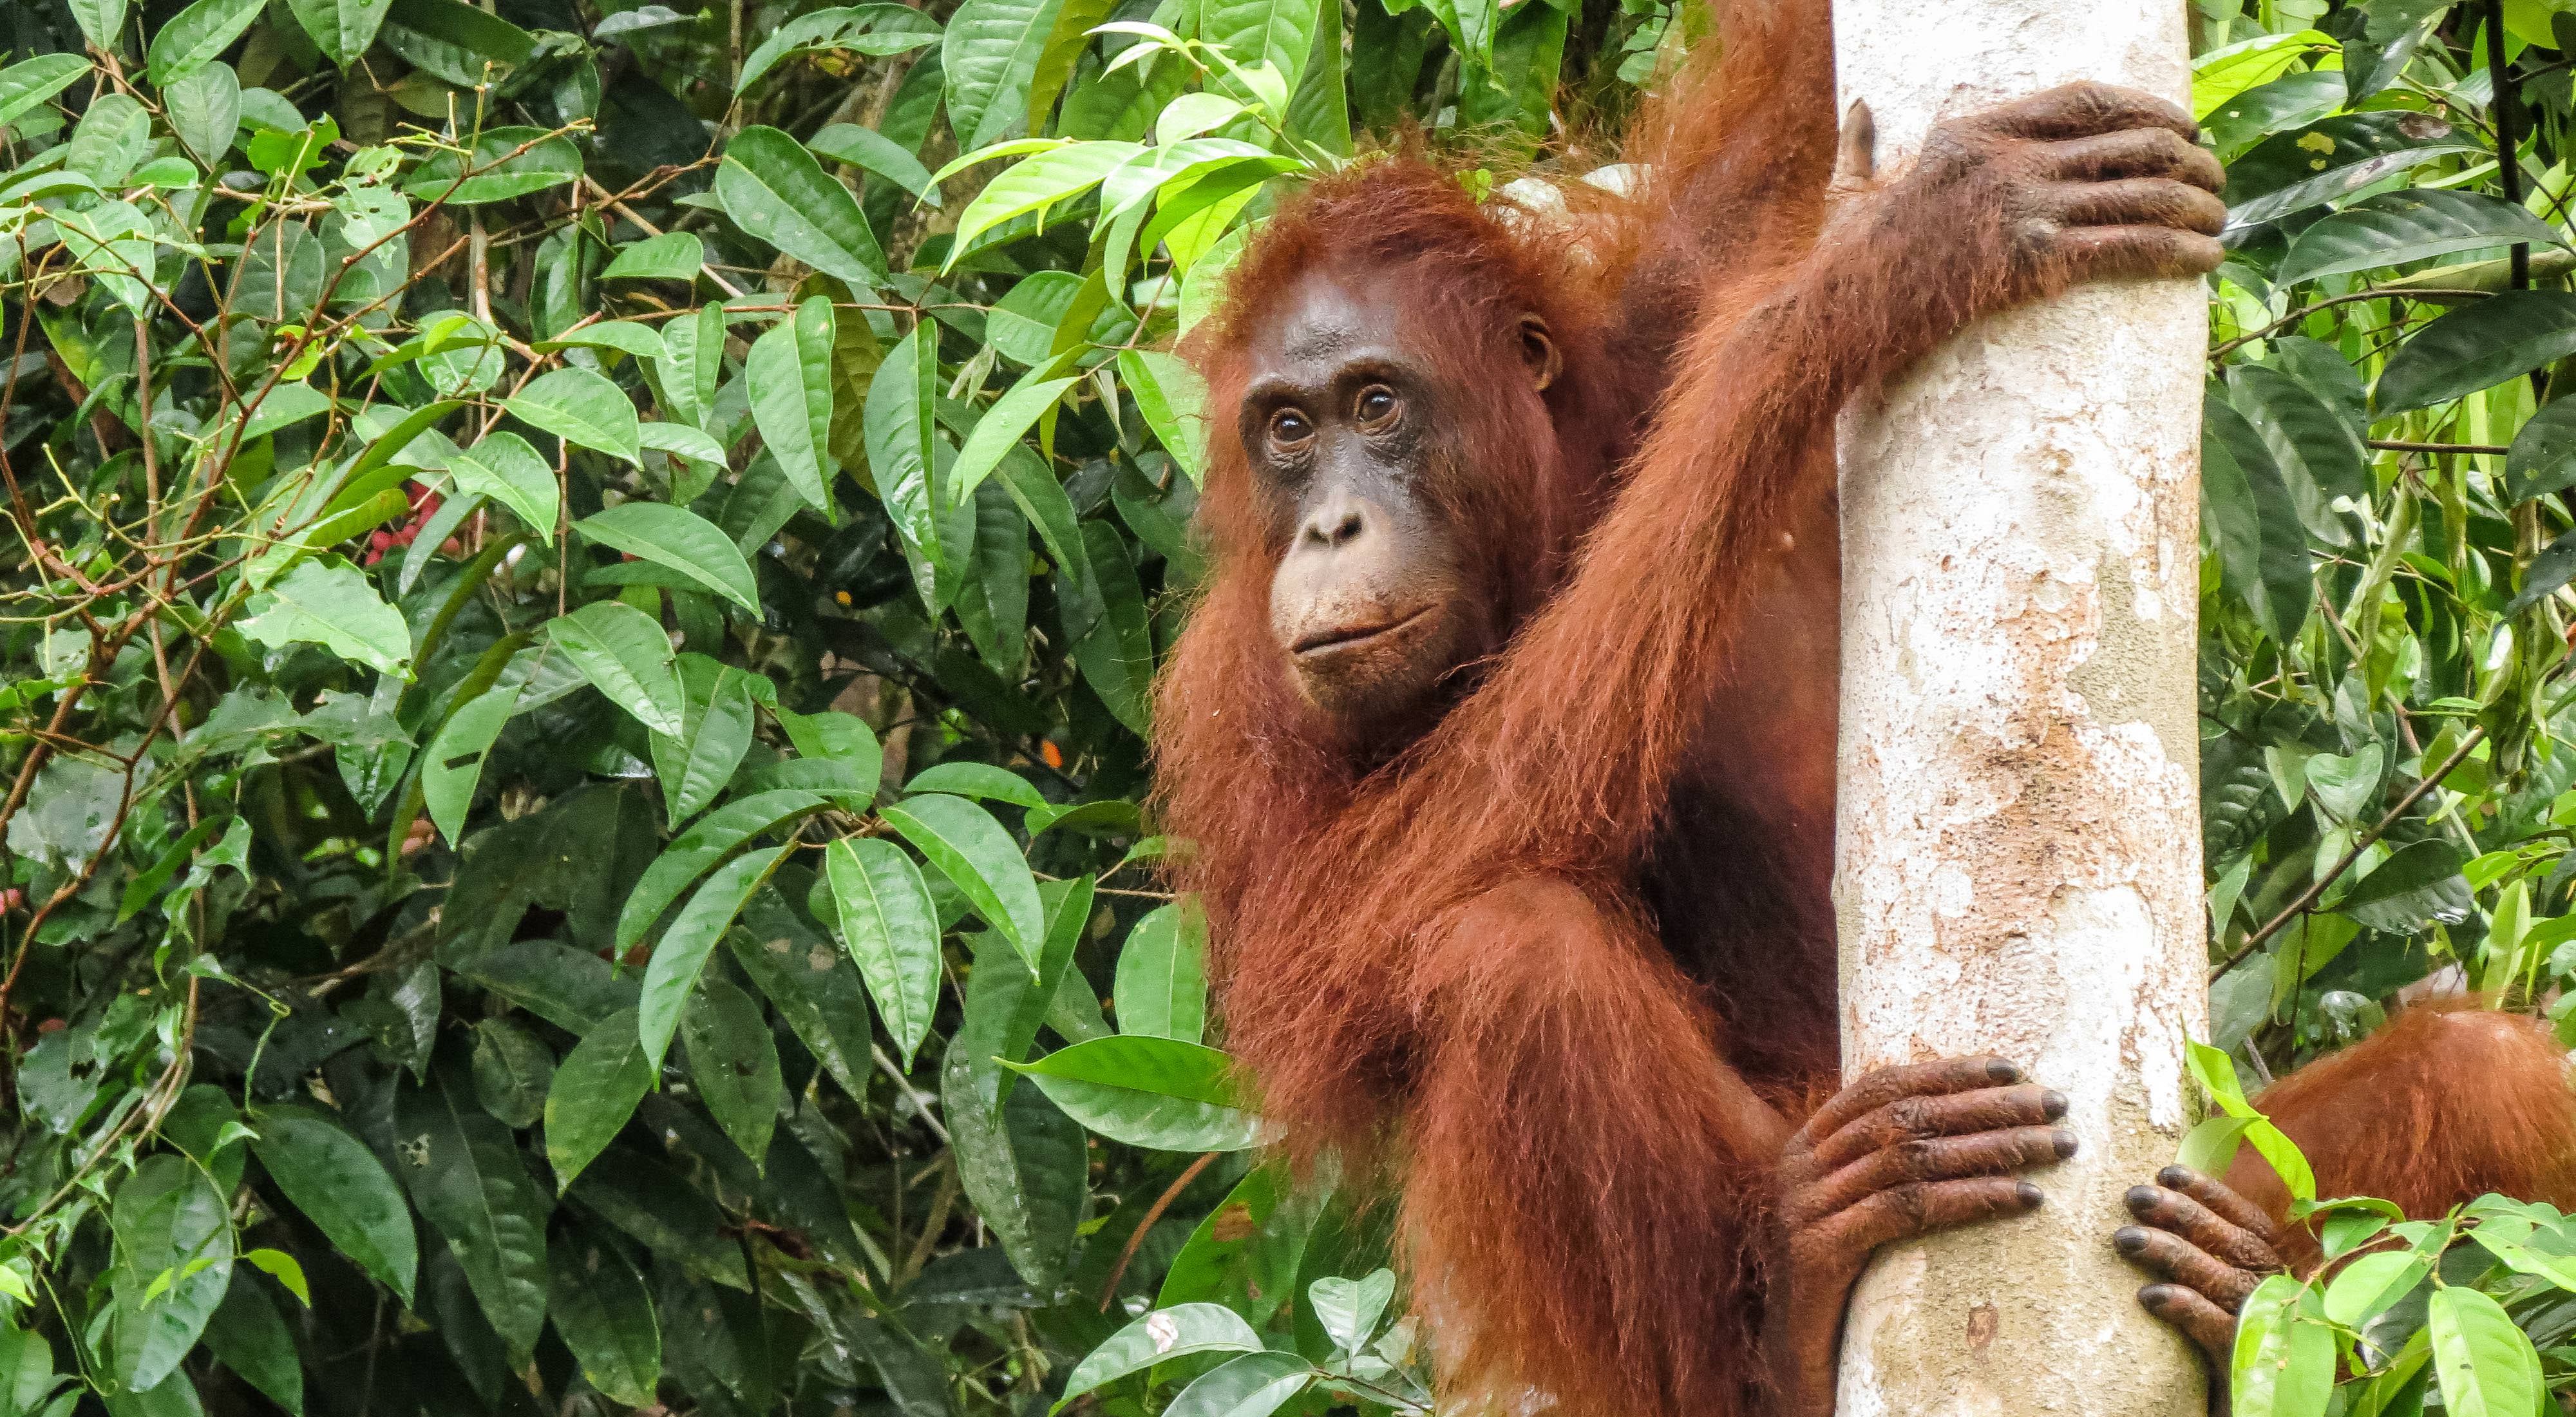 Bornean Orangutan, a critically endangered primate